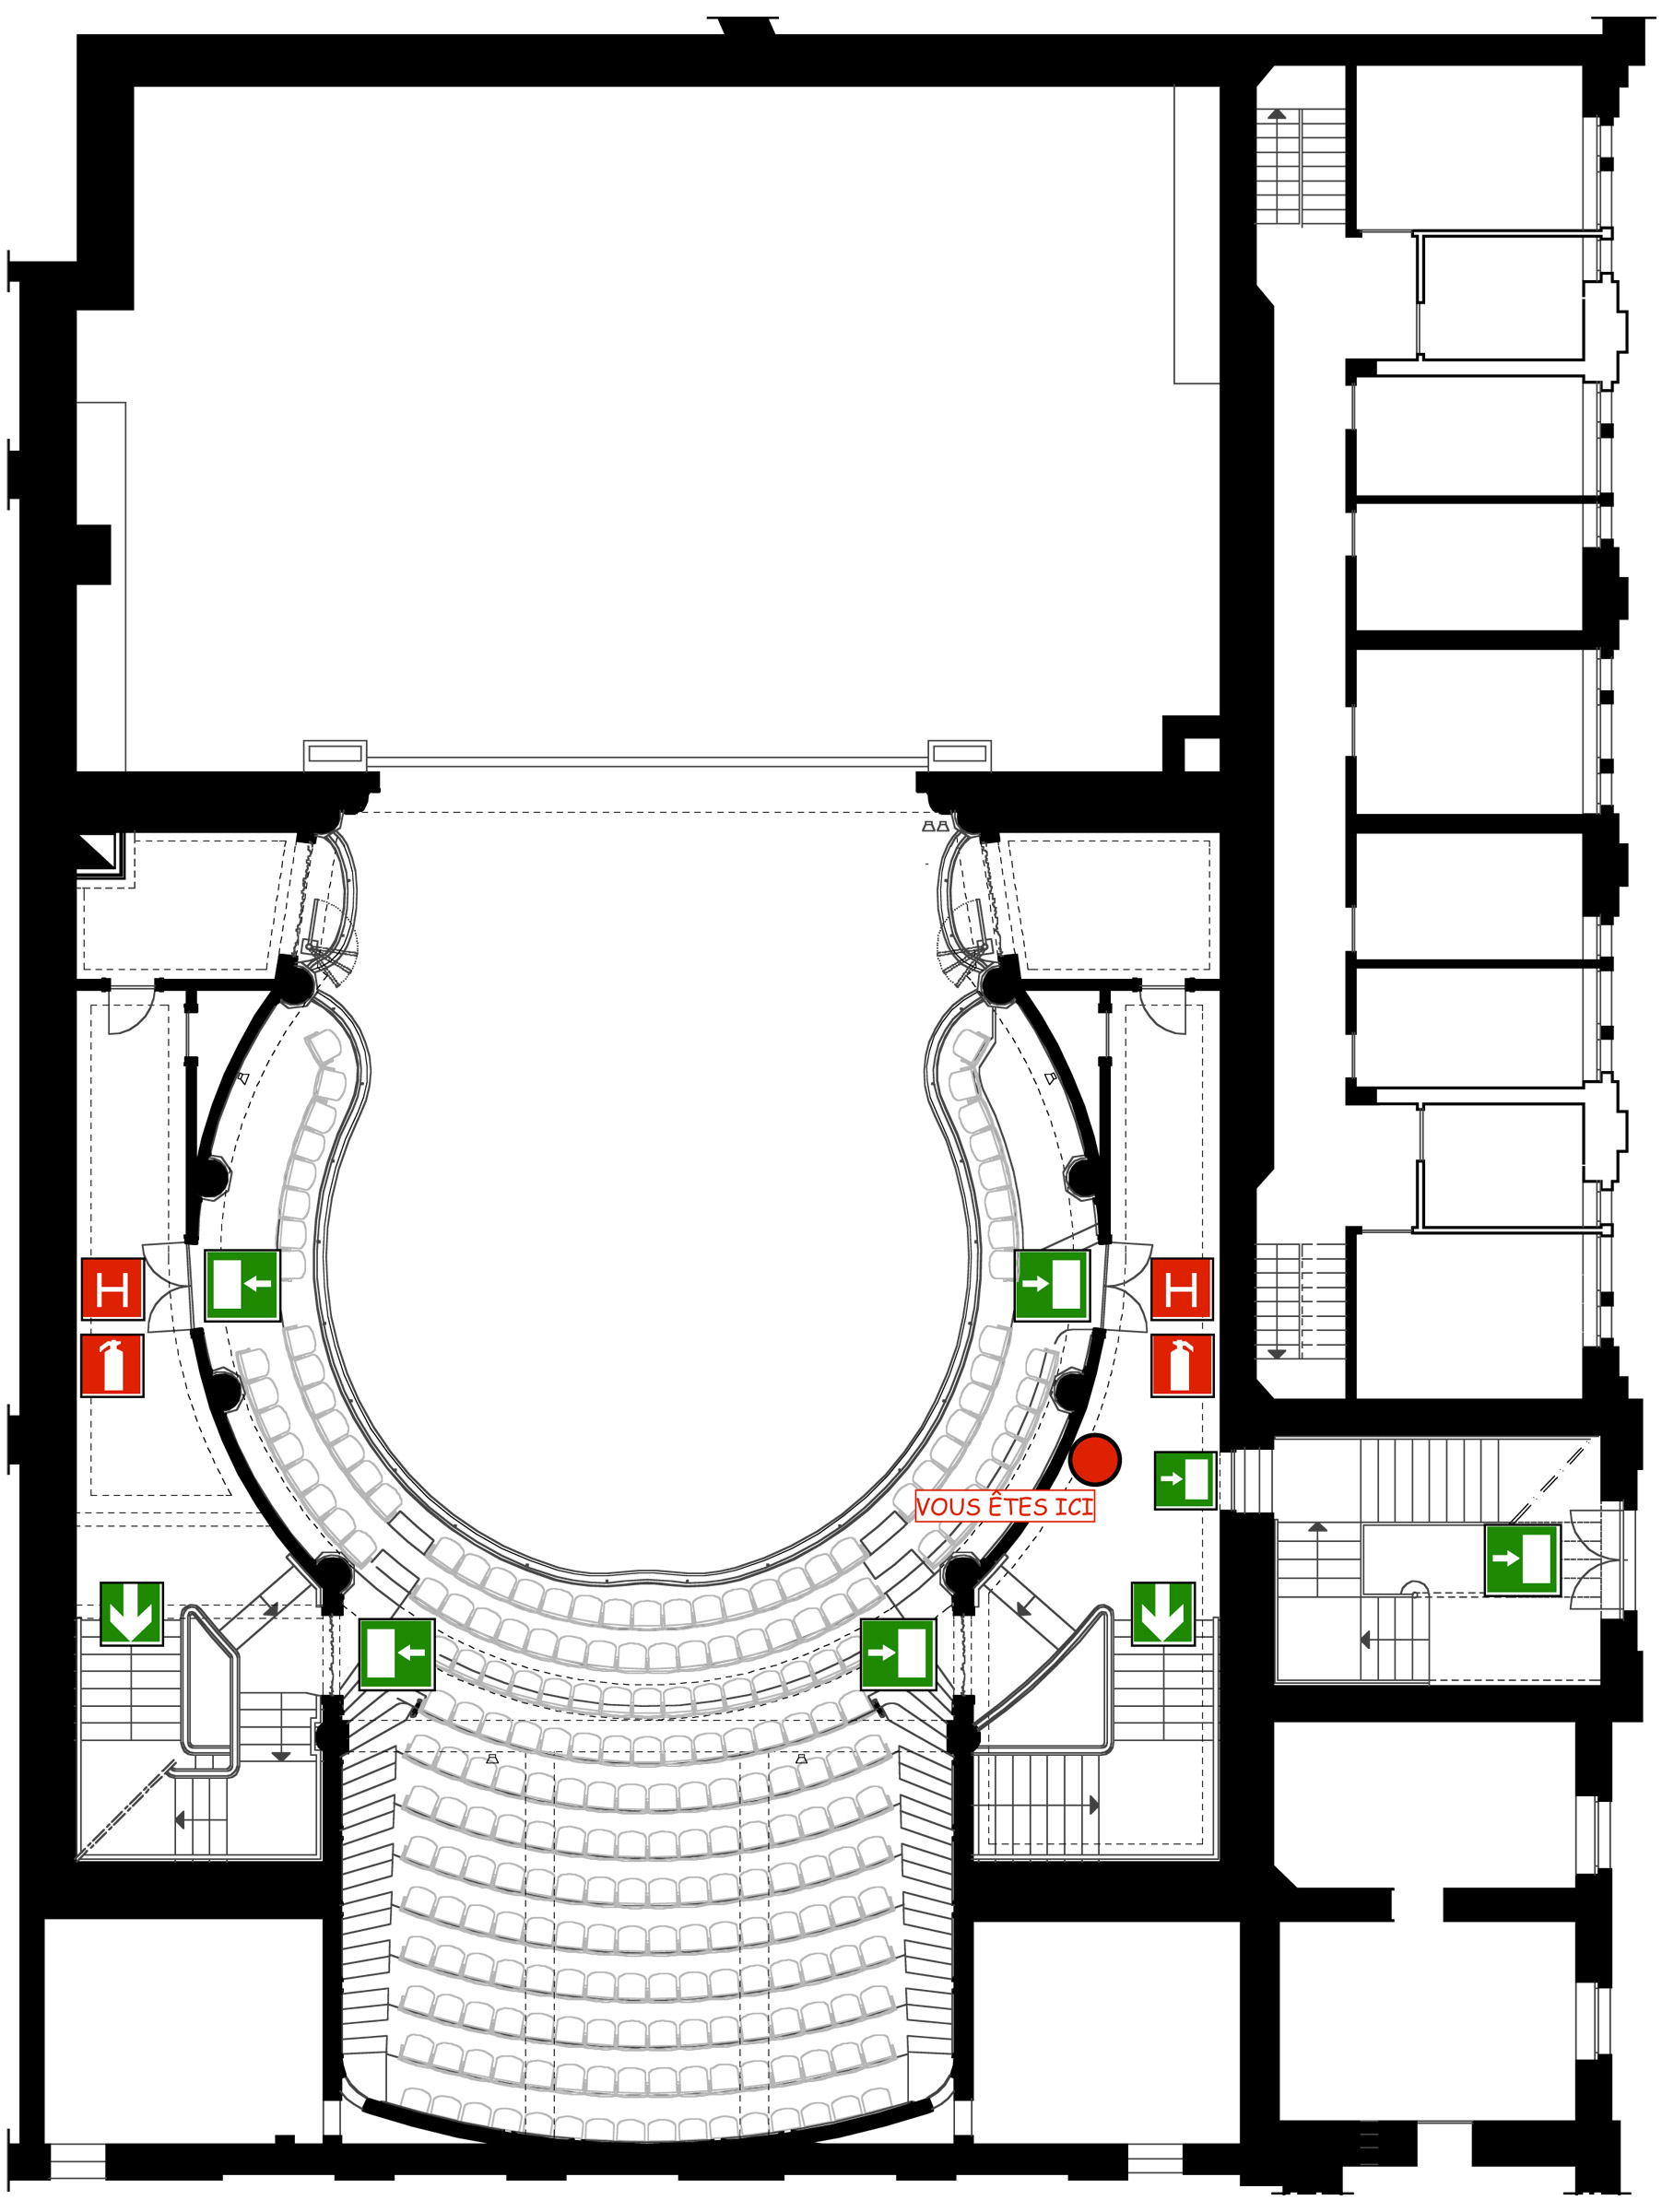 Plan 1er étage théâtre de Spa